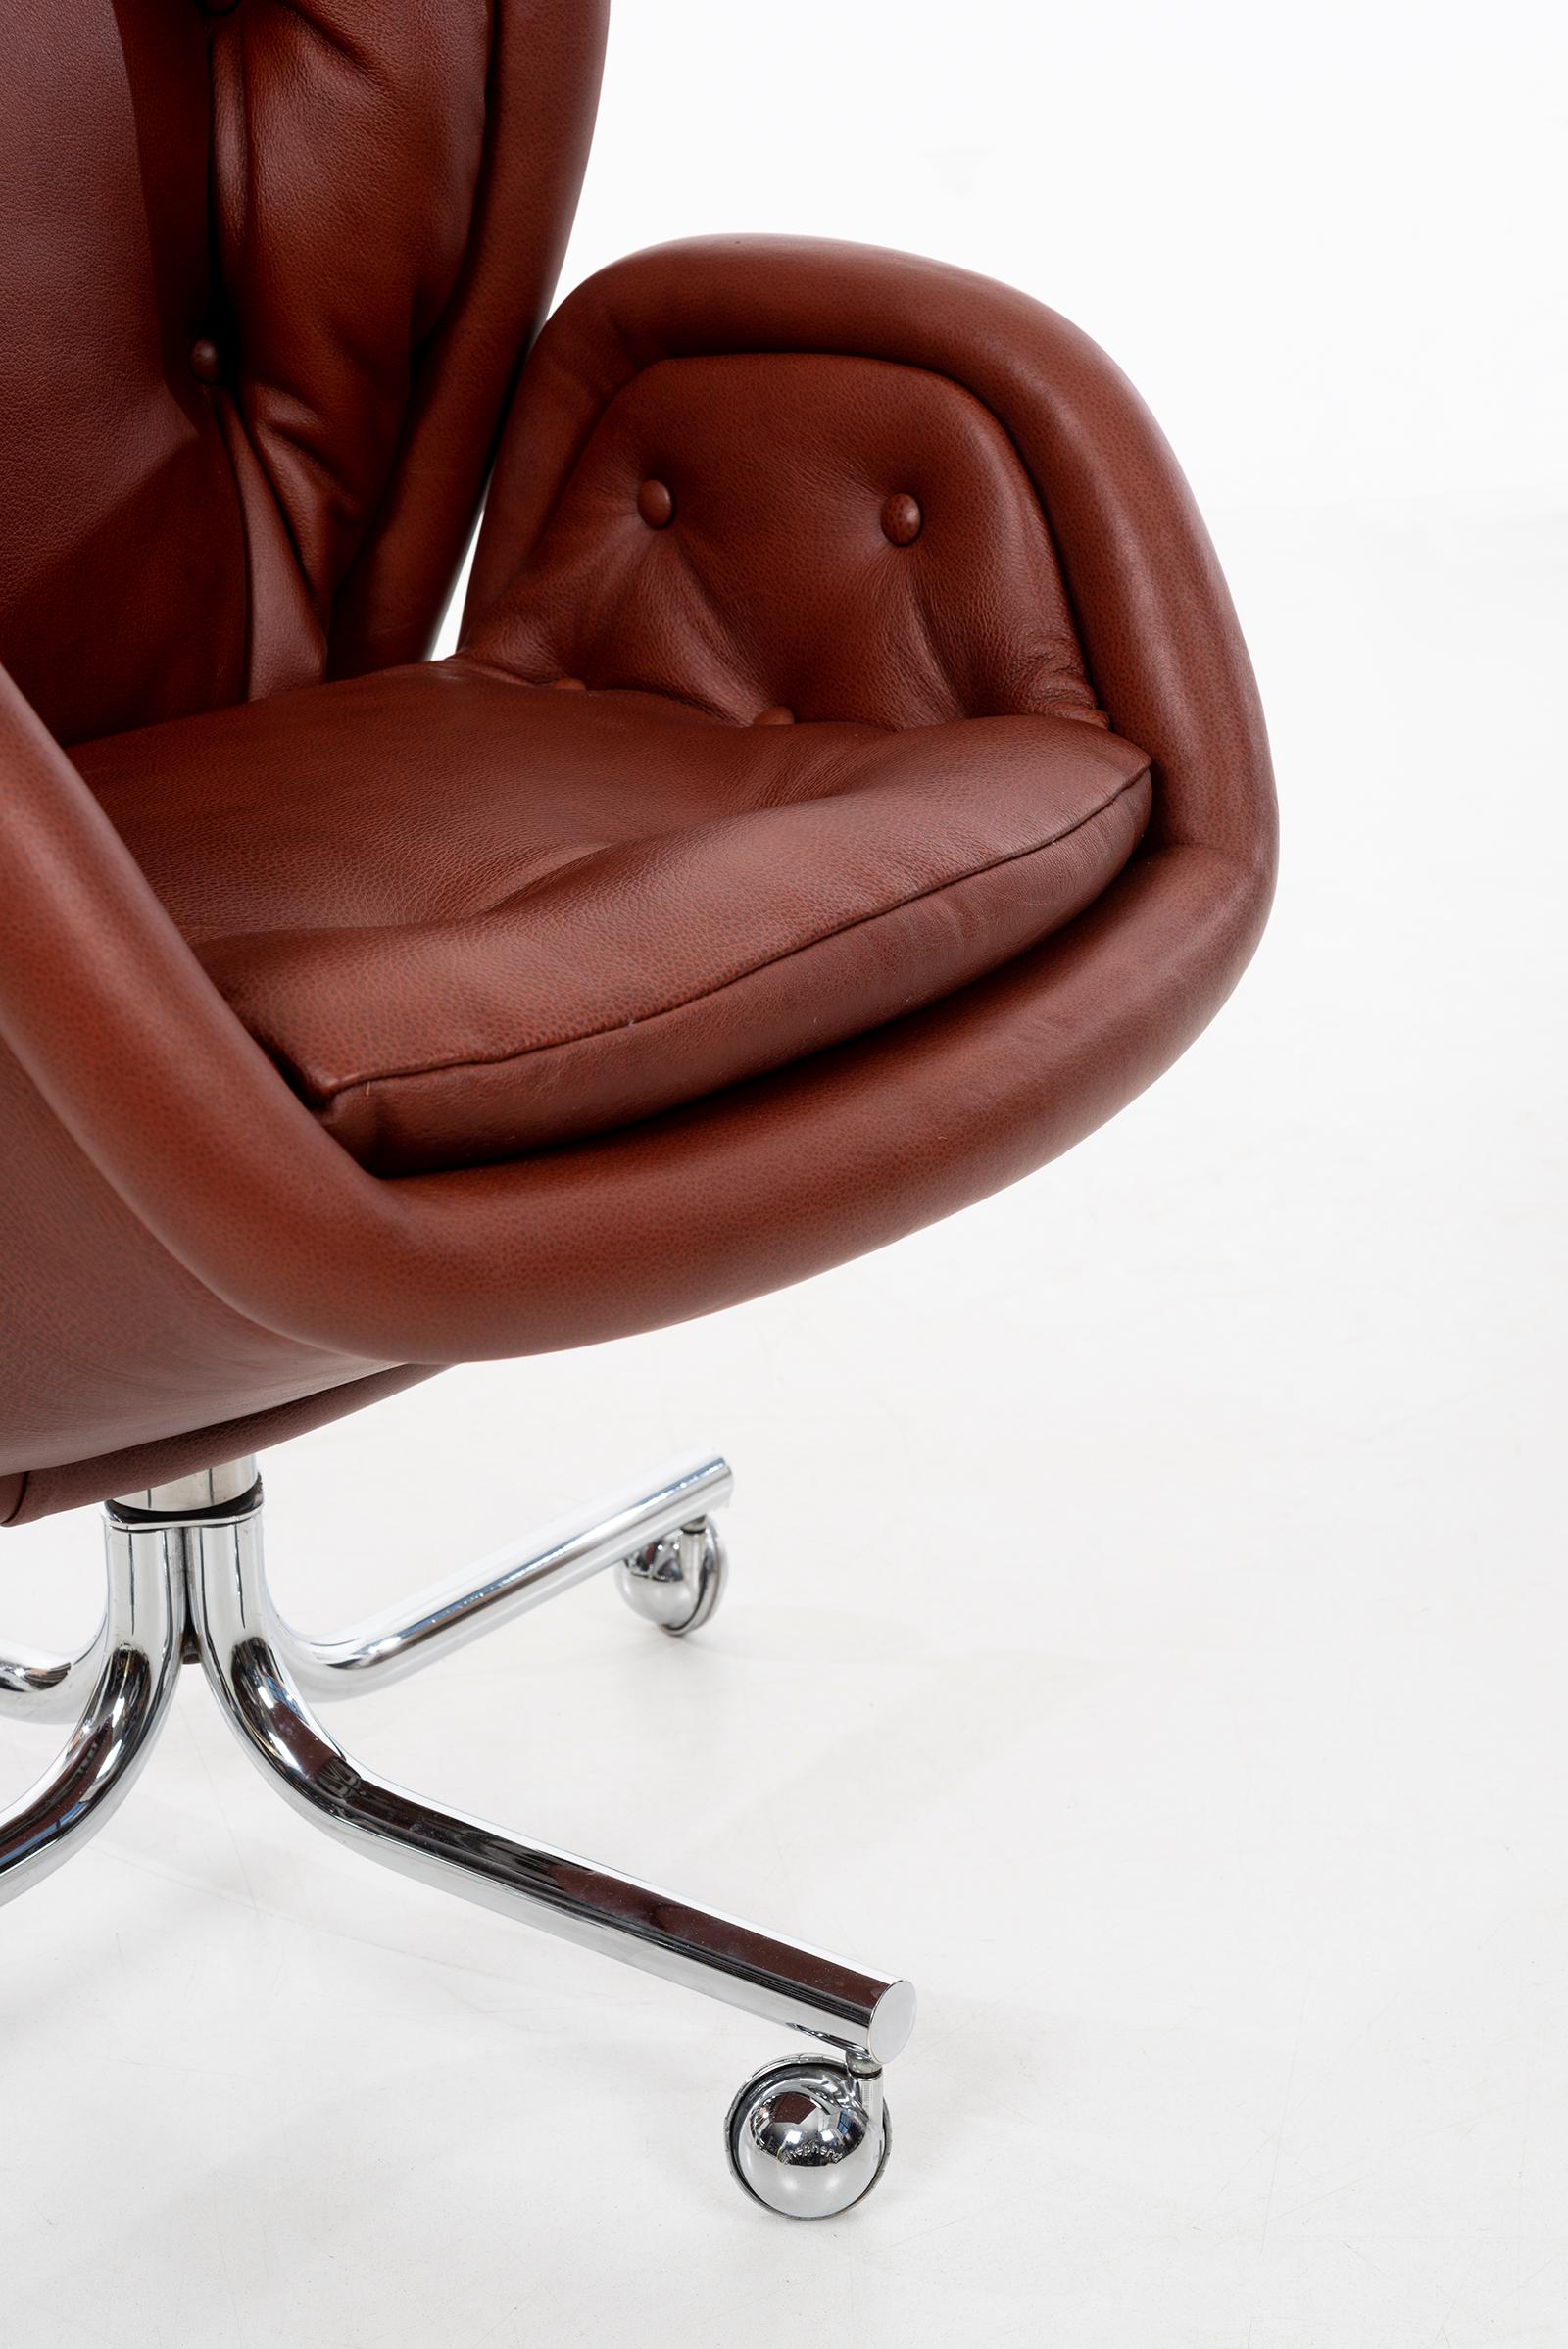 Domore Executive Desk Chair 1